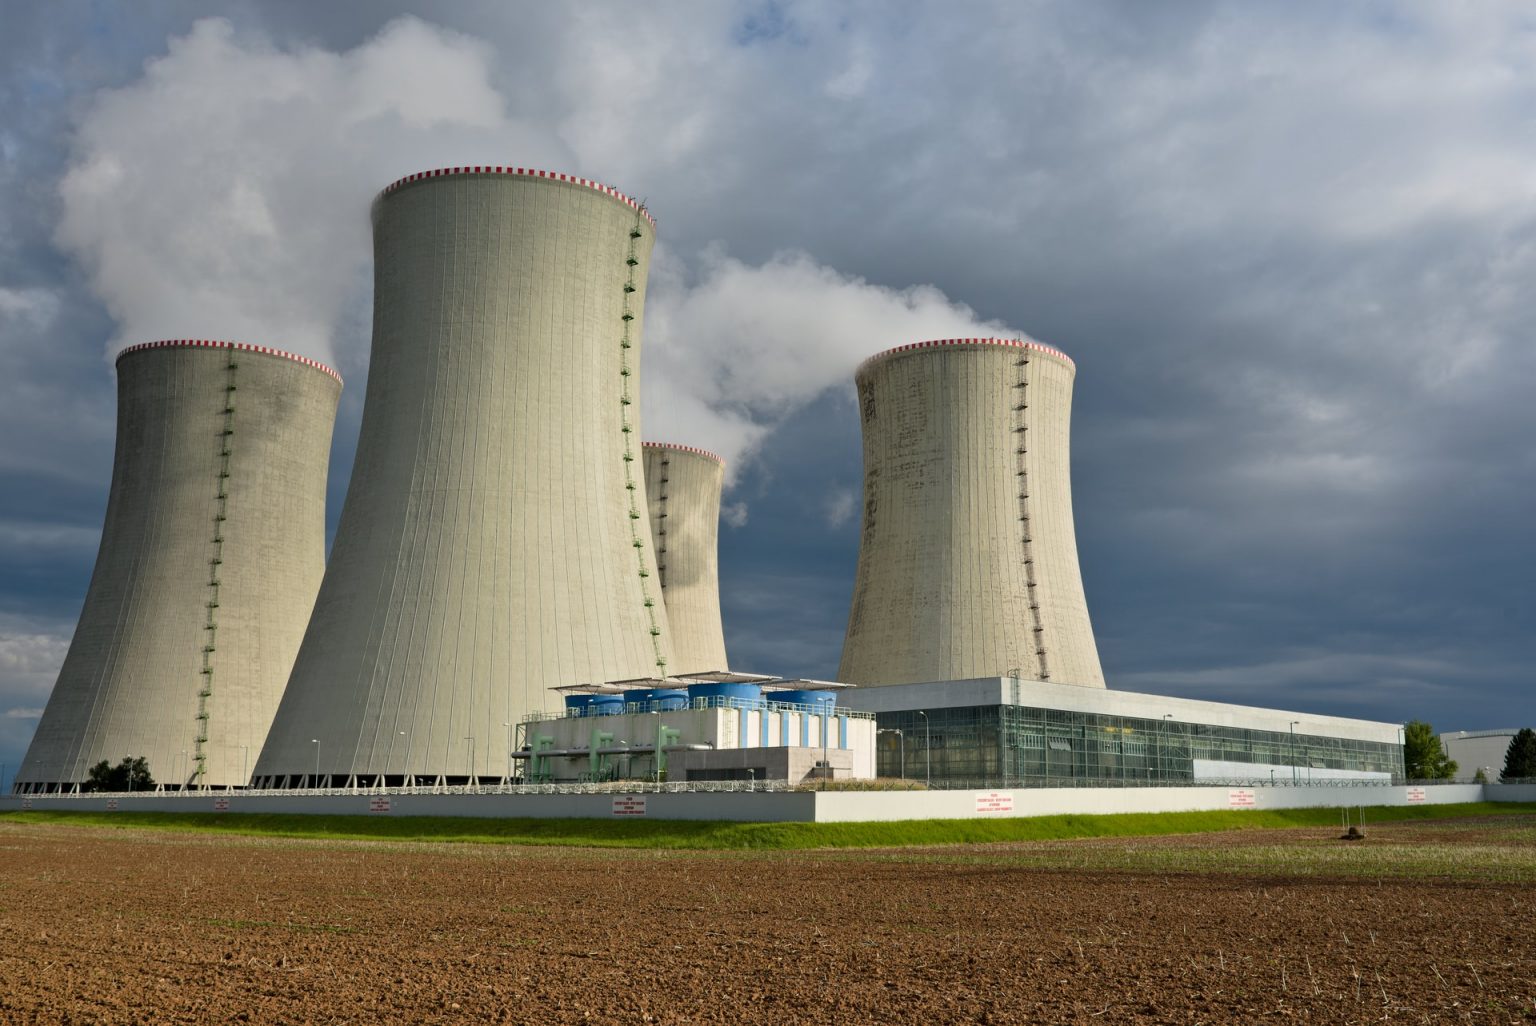 nuclear energy in kazakhstan essay